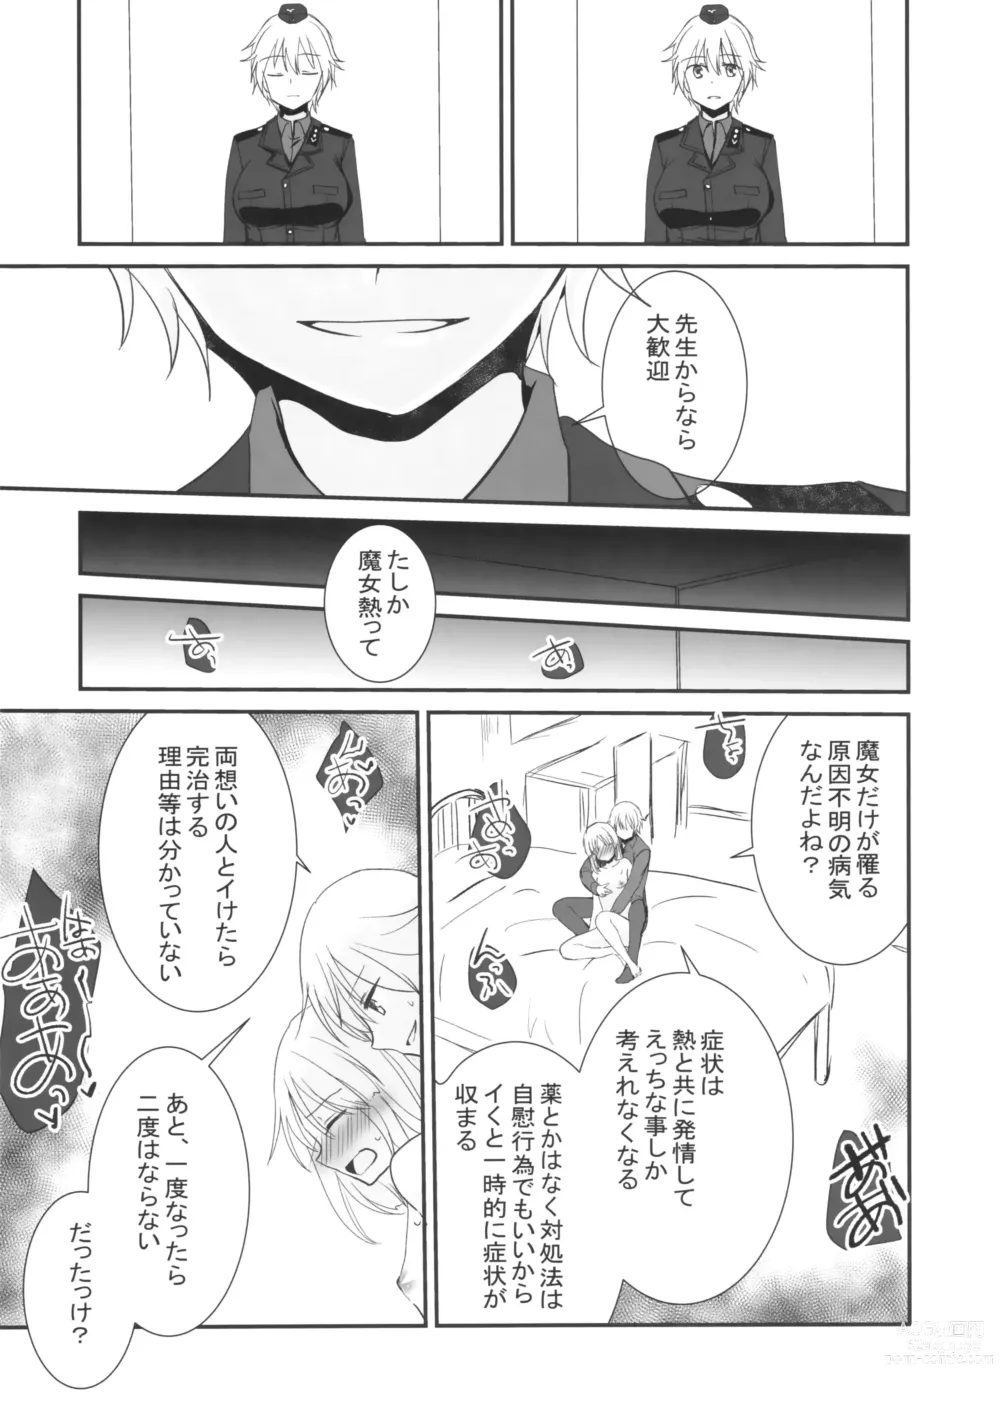 Page 9 of doujinshi Soushisouai